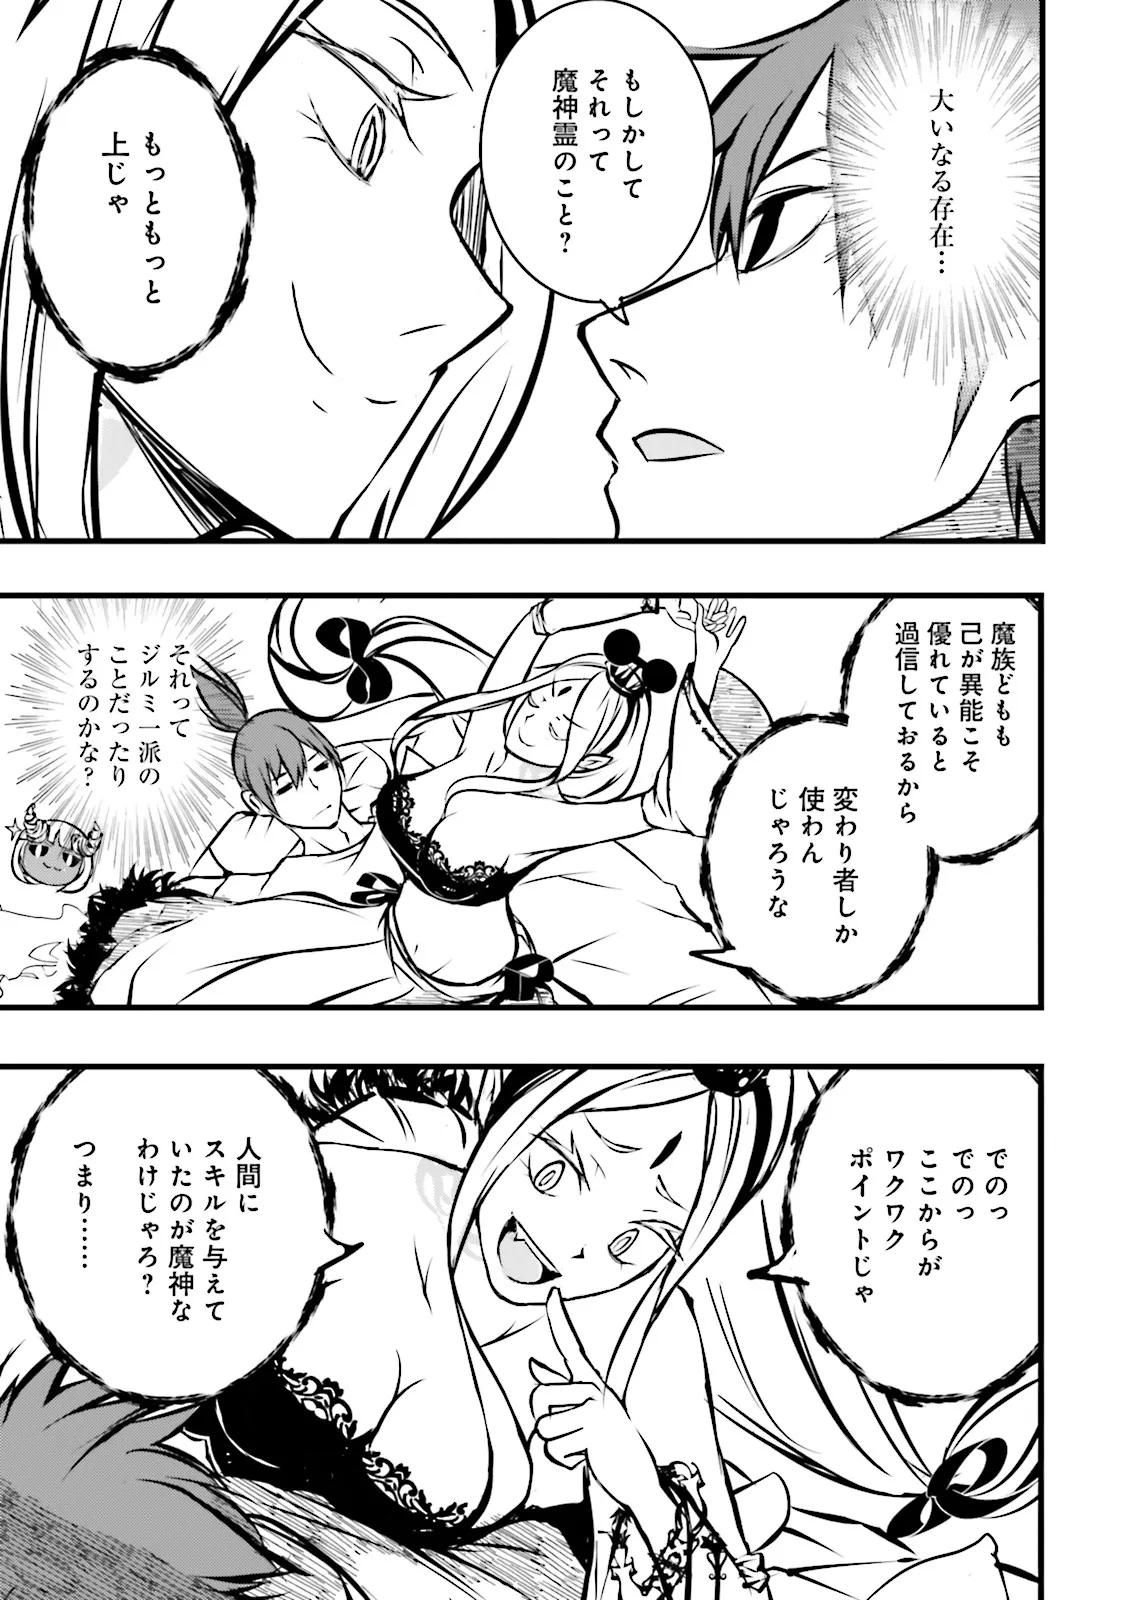 Sukiru Ga Nakereba Level wo Ageru ~ 99 Ga Kansuto No Sekai De Reberu 800 Man Kara Sutato ~ - Chapter 38.2 - Page 9